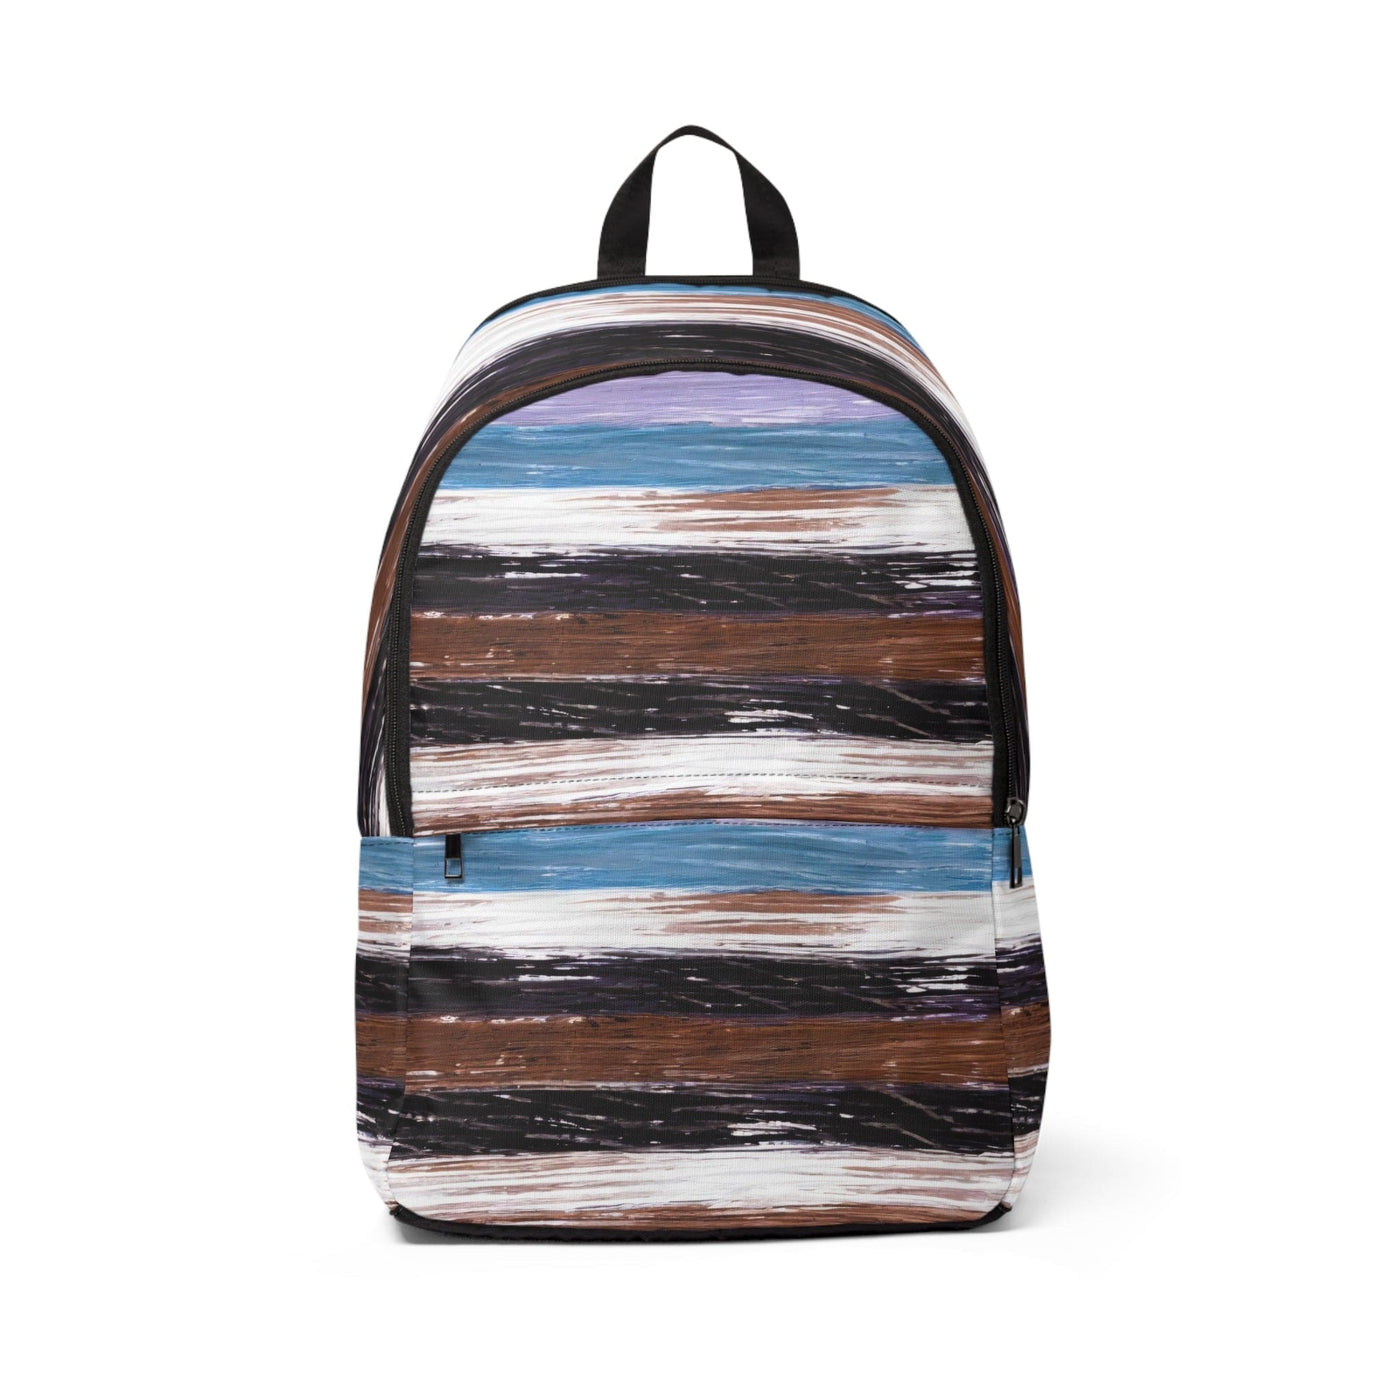 Fashion Backpack Waterproof Lavender Black Brown Rustic Pattern - Bags